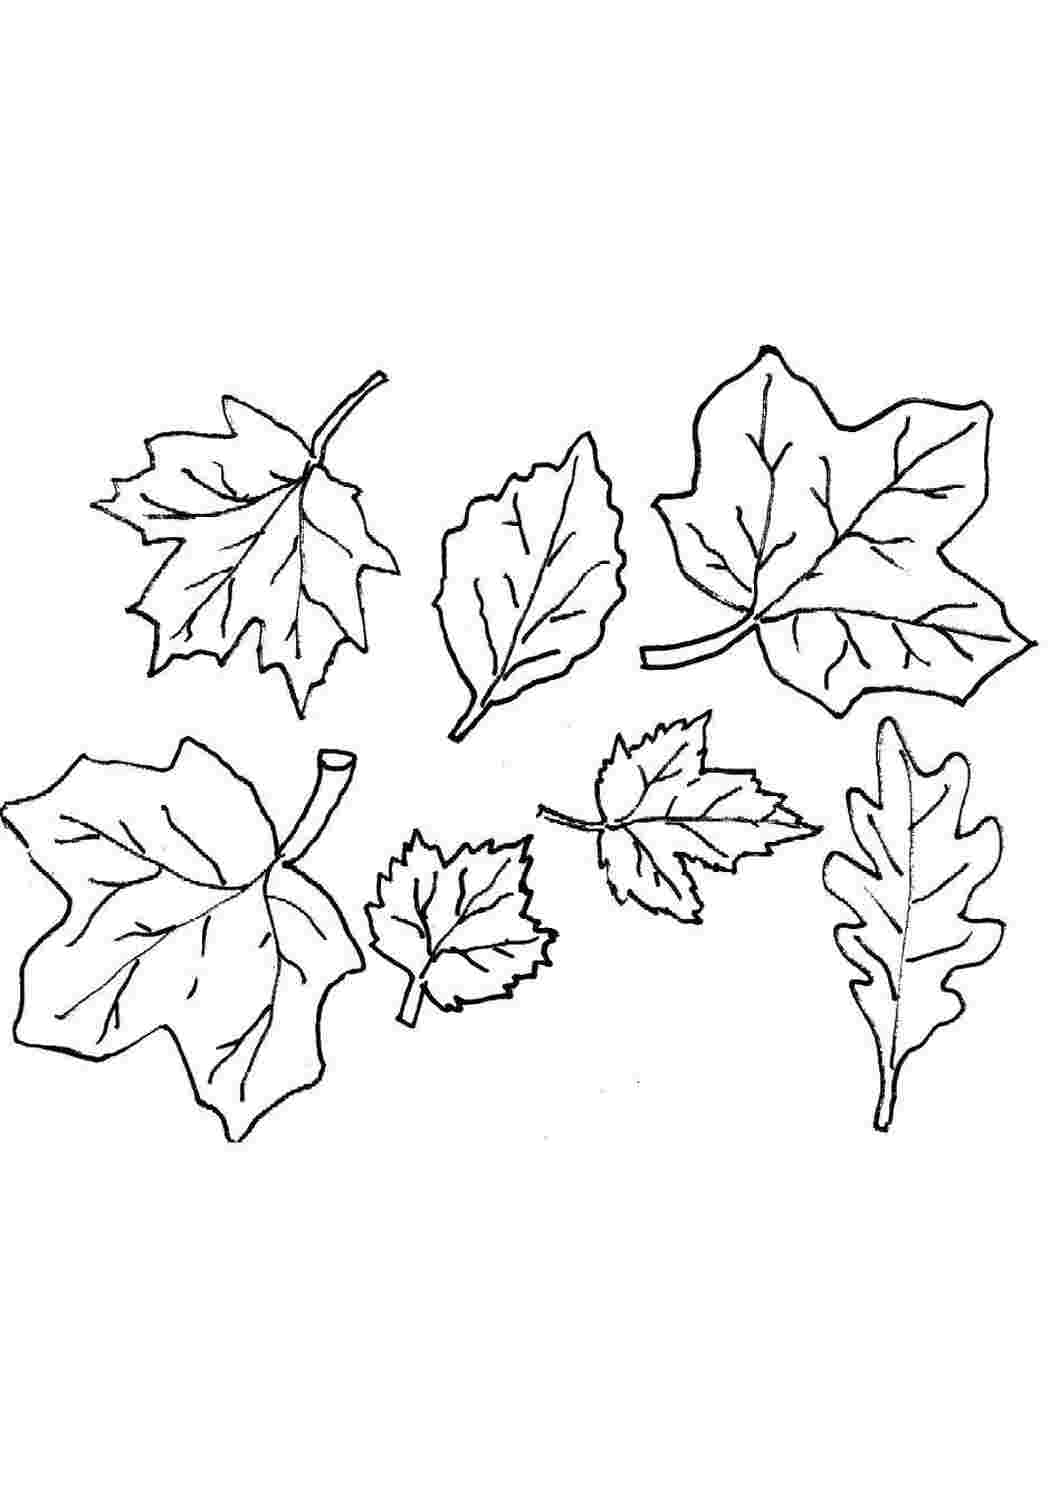 Раскраски листьев, Раскраска осенние листья трафареты картинки Контуры листьев.